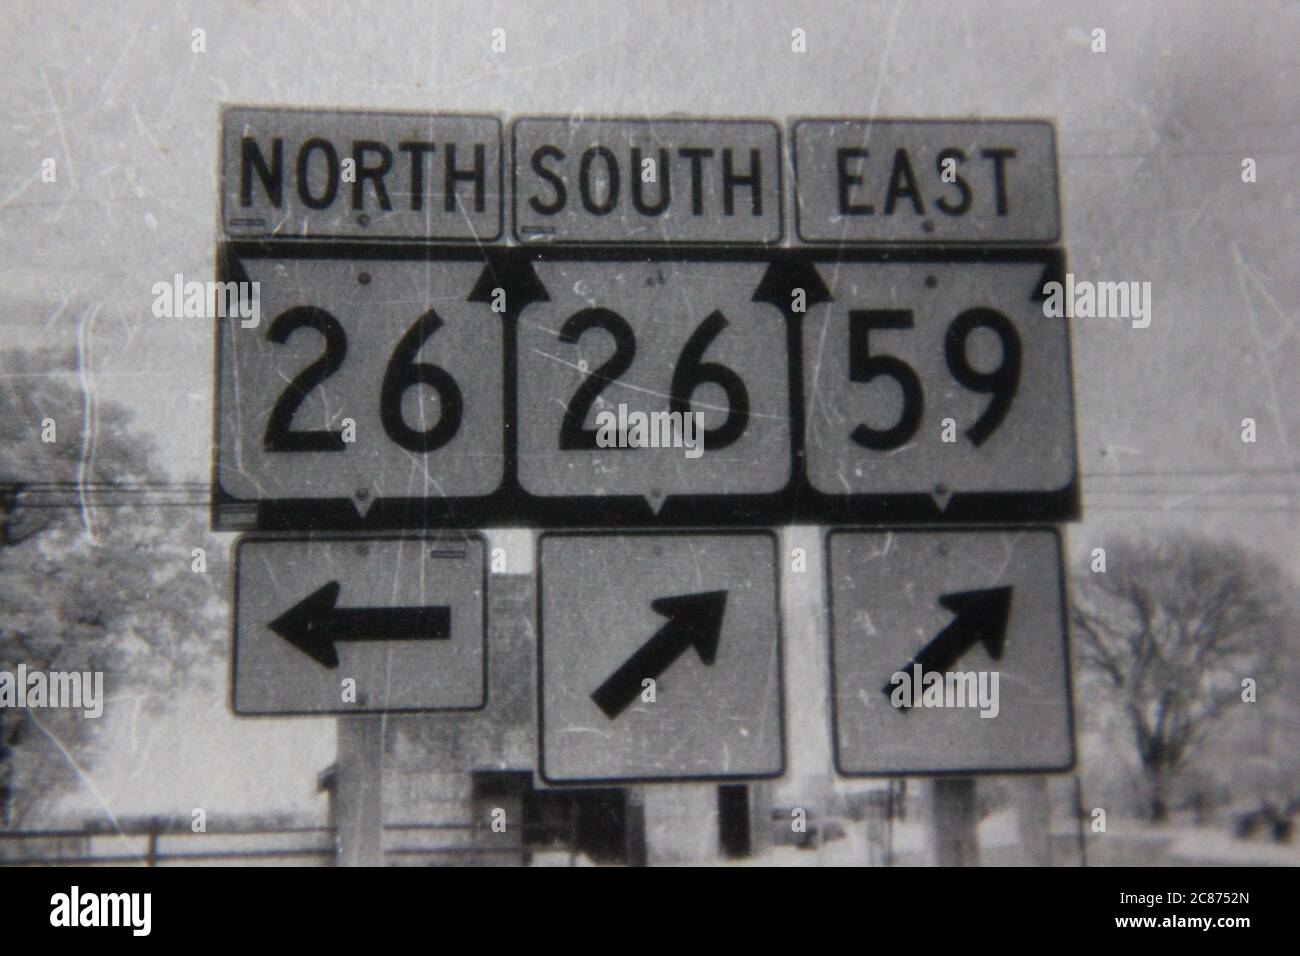 Fin années 70 vintage noir et blanc style de vie photographie de panneaux de route de diverses directions. Banque D'Images